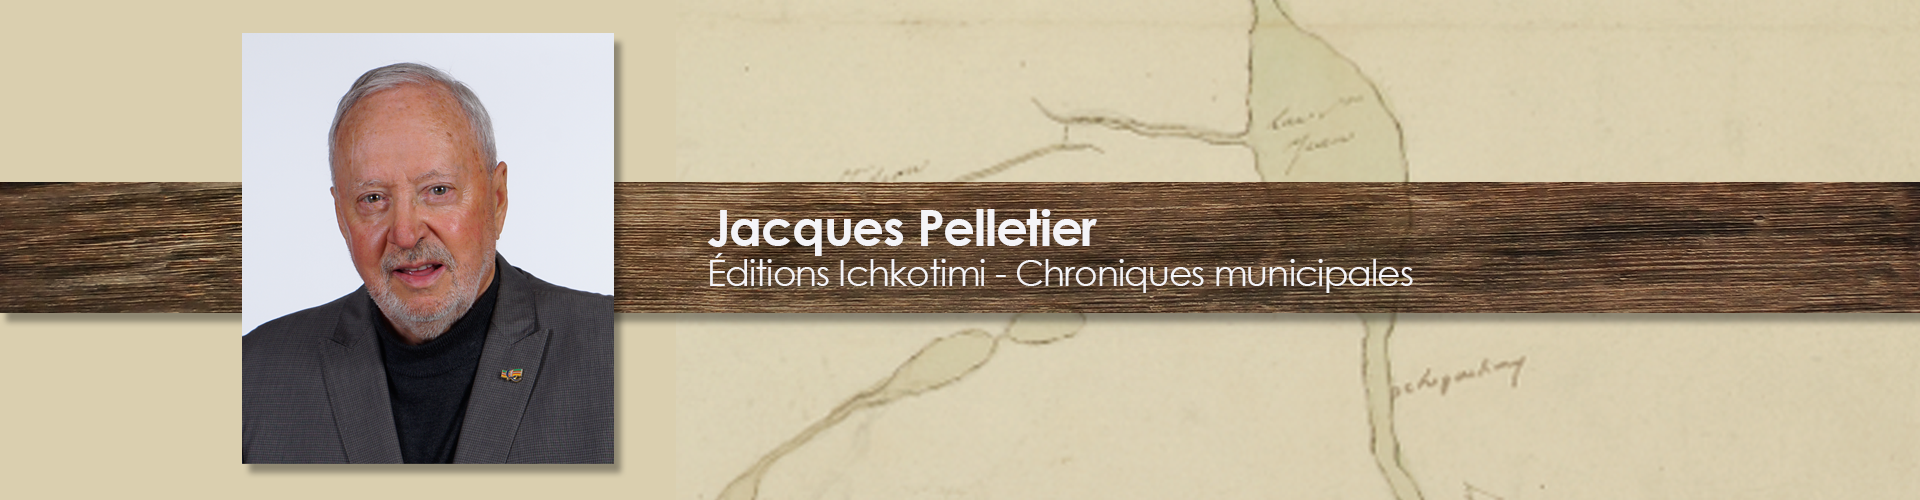 Jacques Pelletier - Éditions Ichkotimi - Chroniques municipales